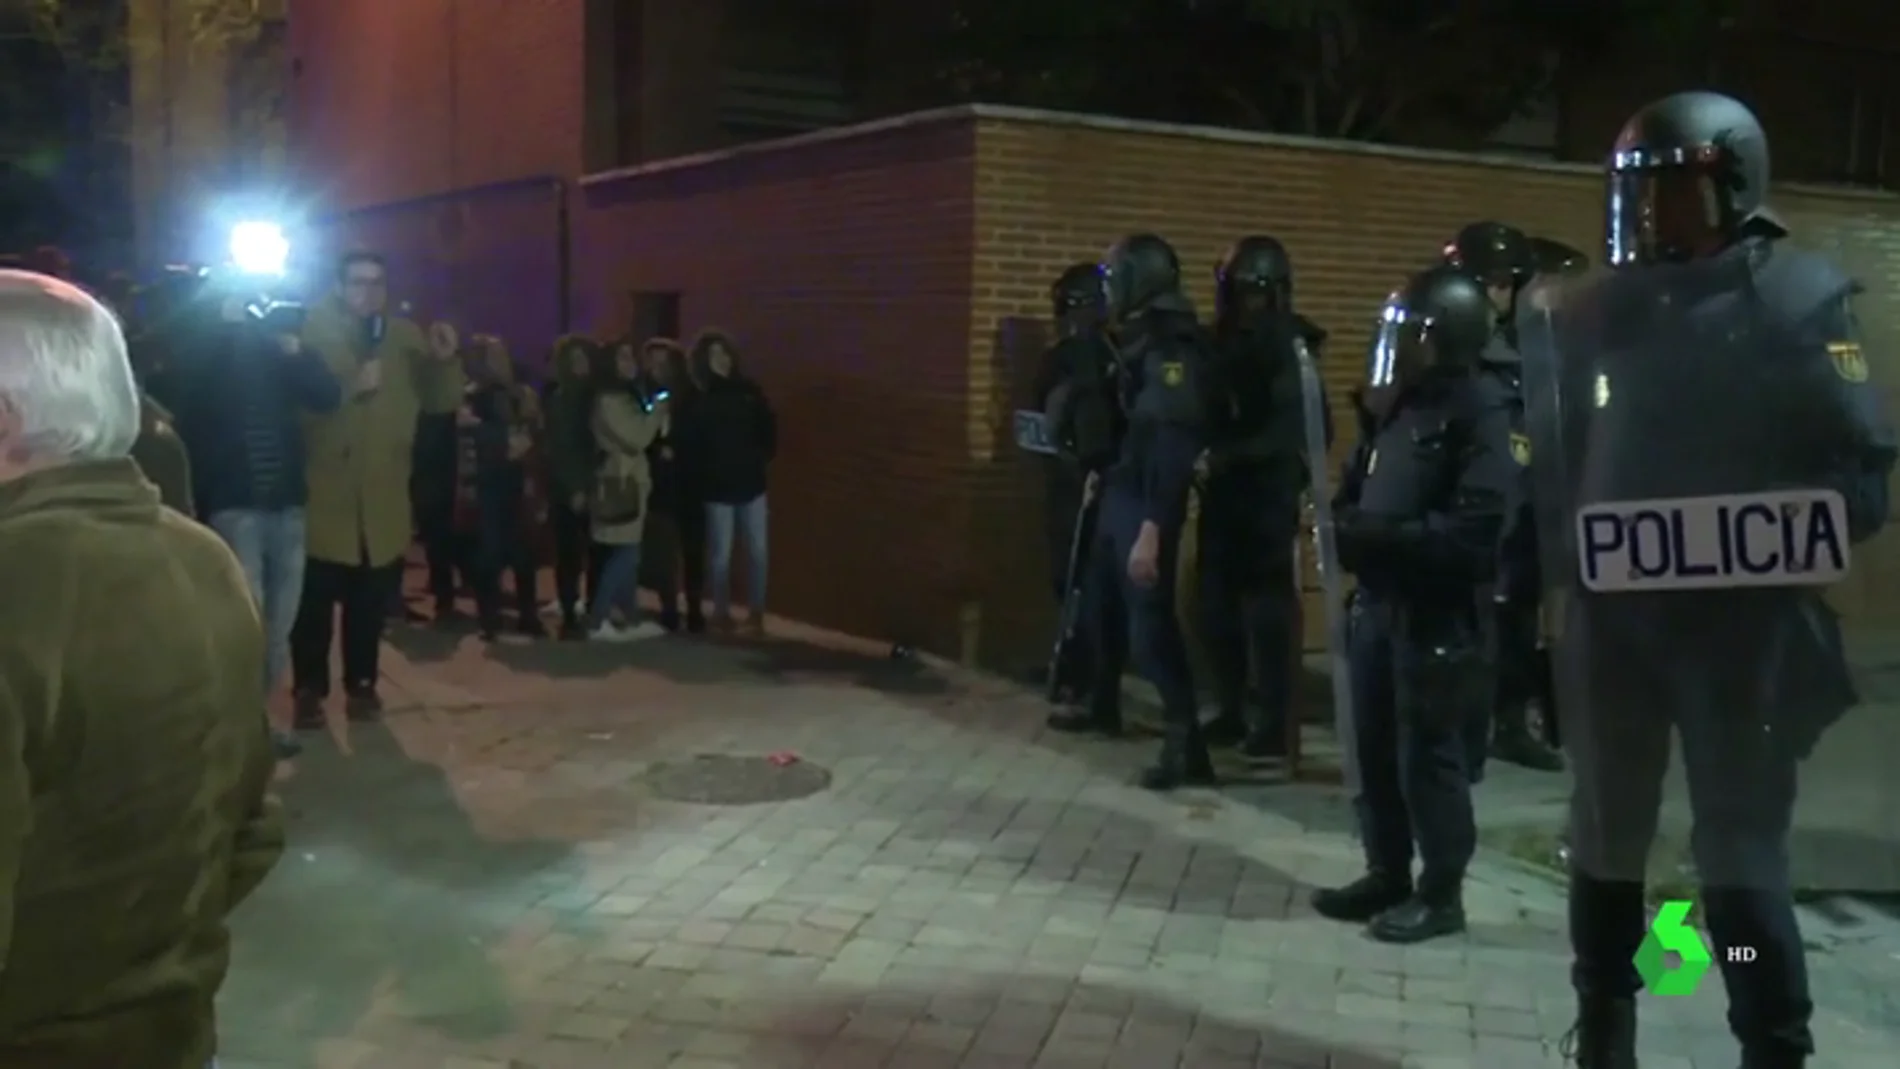 Los antidisturbios intervienen para calmar la tensión en Vallecas por el asesinato de un hombre de 63 años